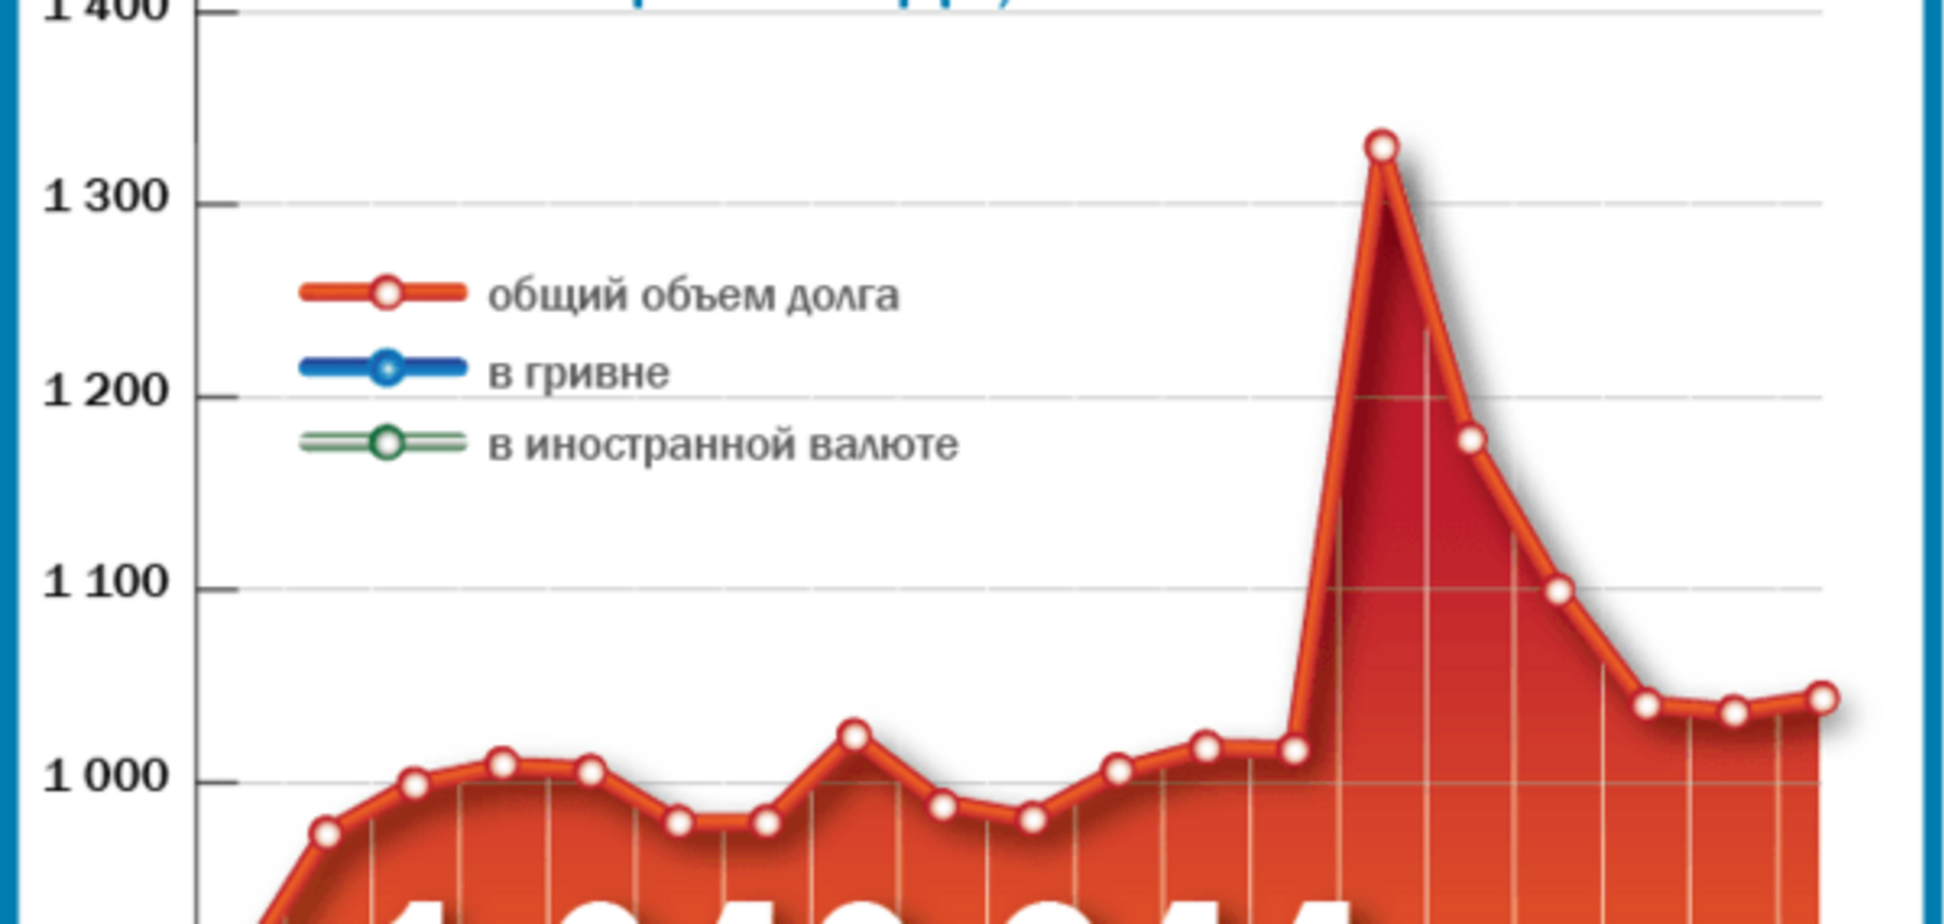 В Украине заметили первые признаки окончания экономического кризиса: опубликована инфографика